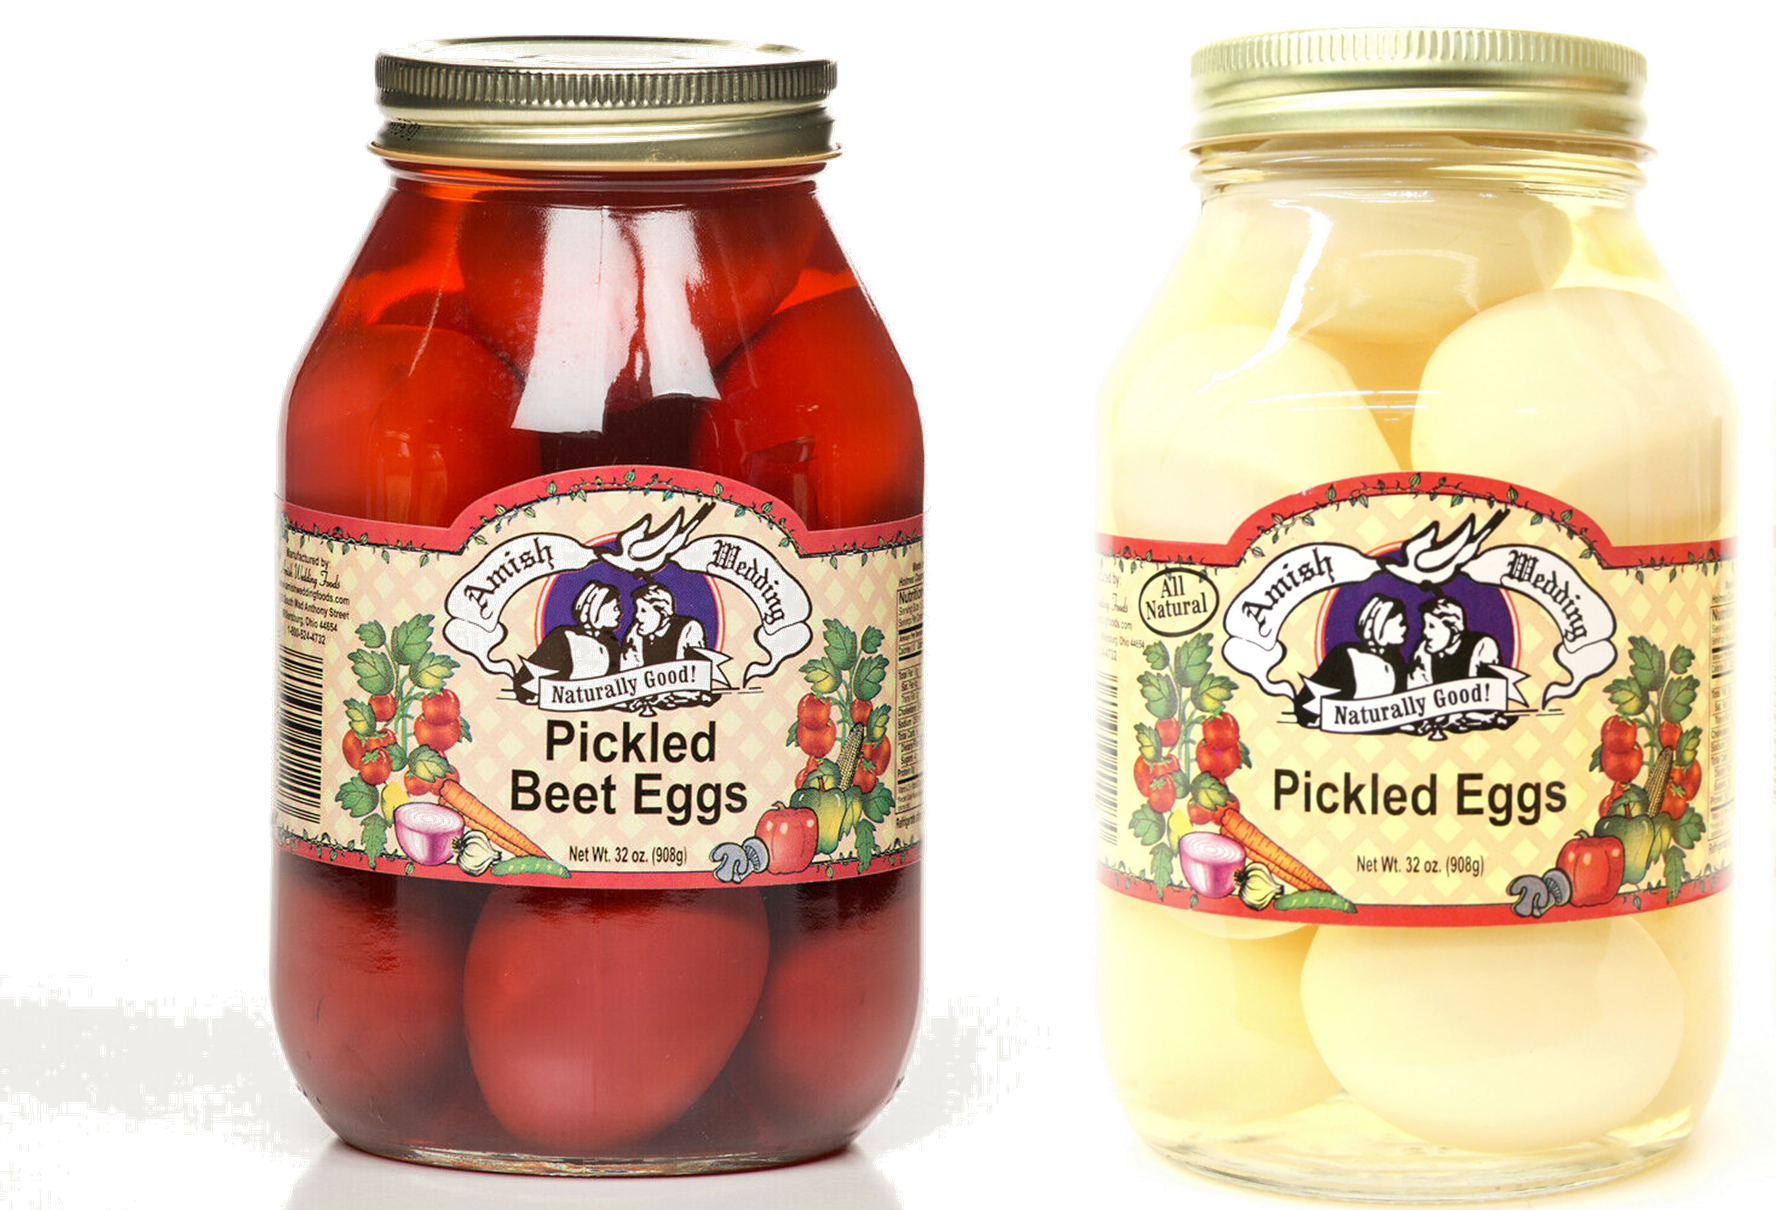 Pork King Good Salt and Vinegar Pickled Eggs 16oz jar – Stateside Crafts